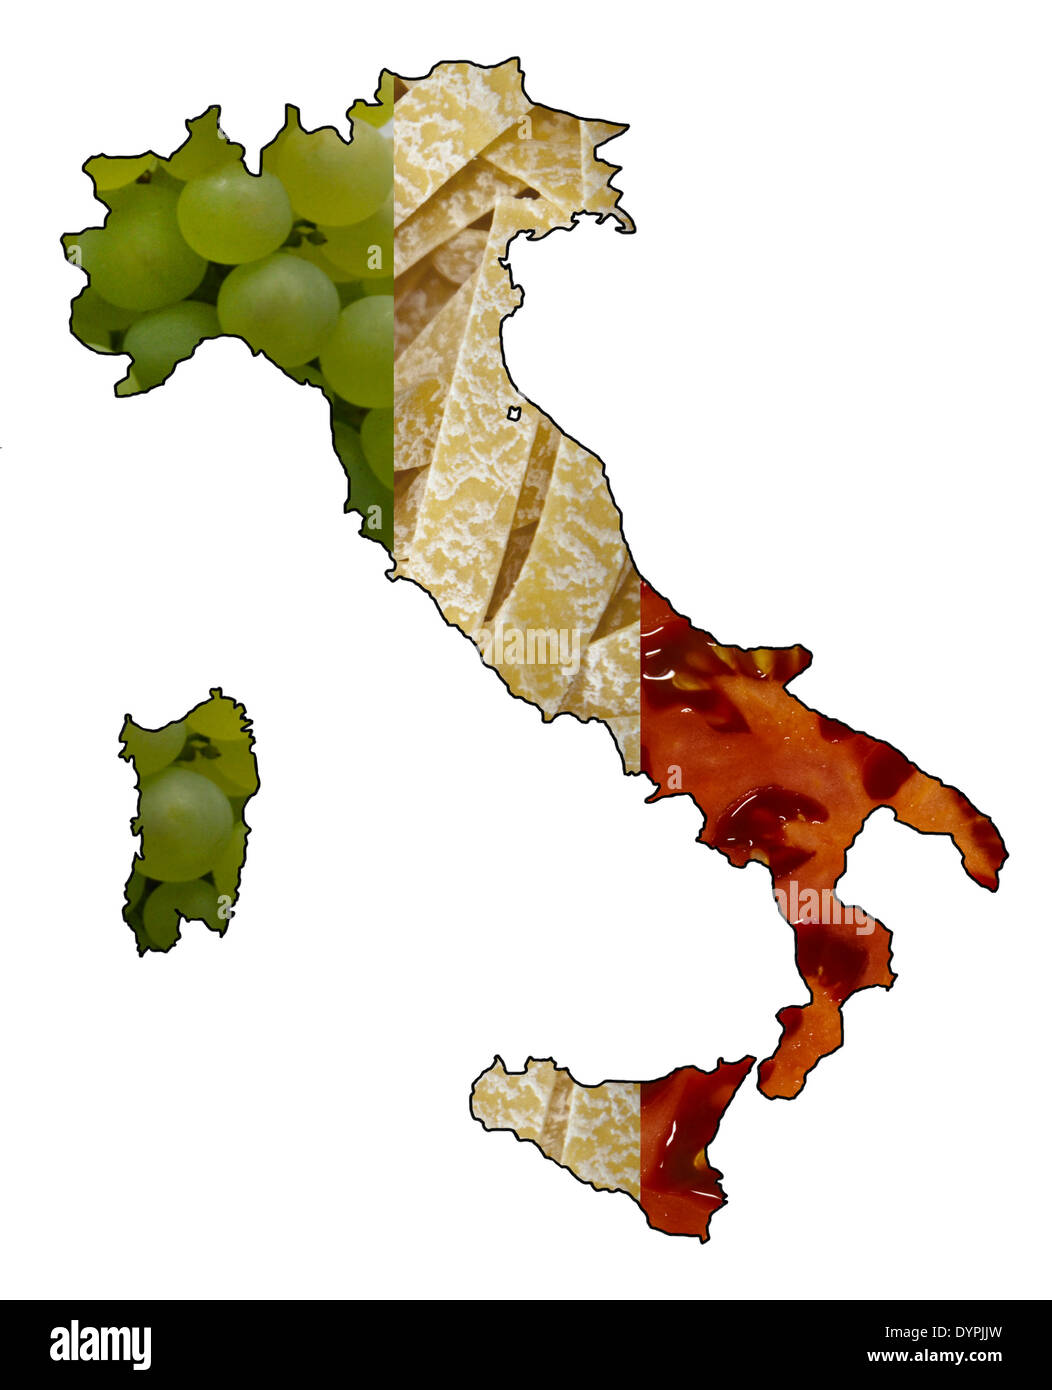 Carte de l'Italie montrant drapeau italien dans les aliments (raisins, pâtes, tomates) Banque D'Images